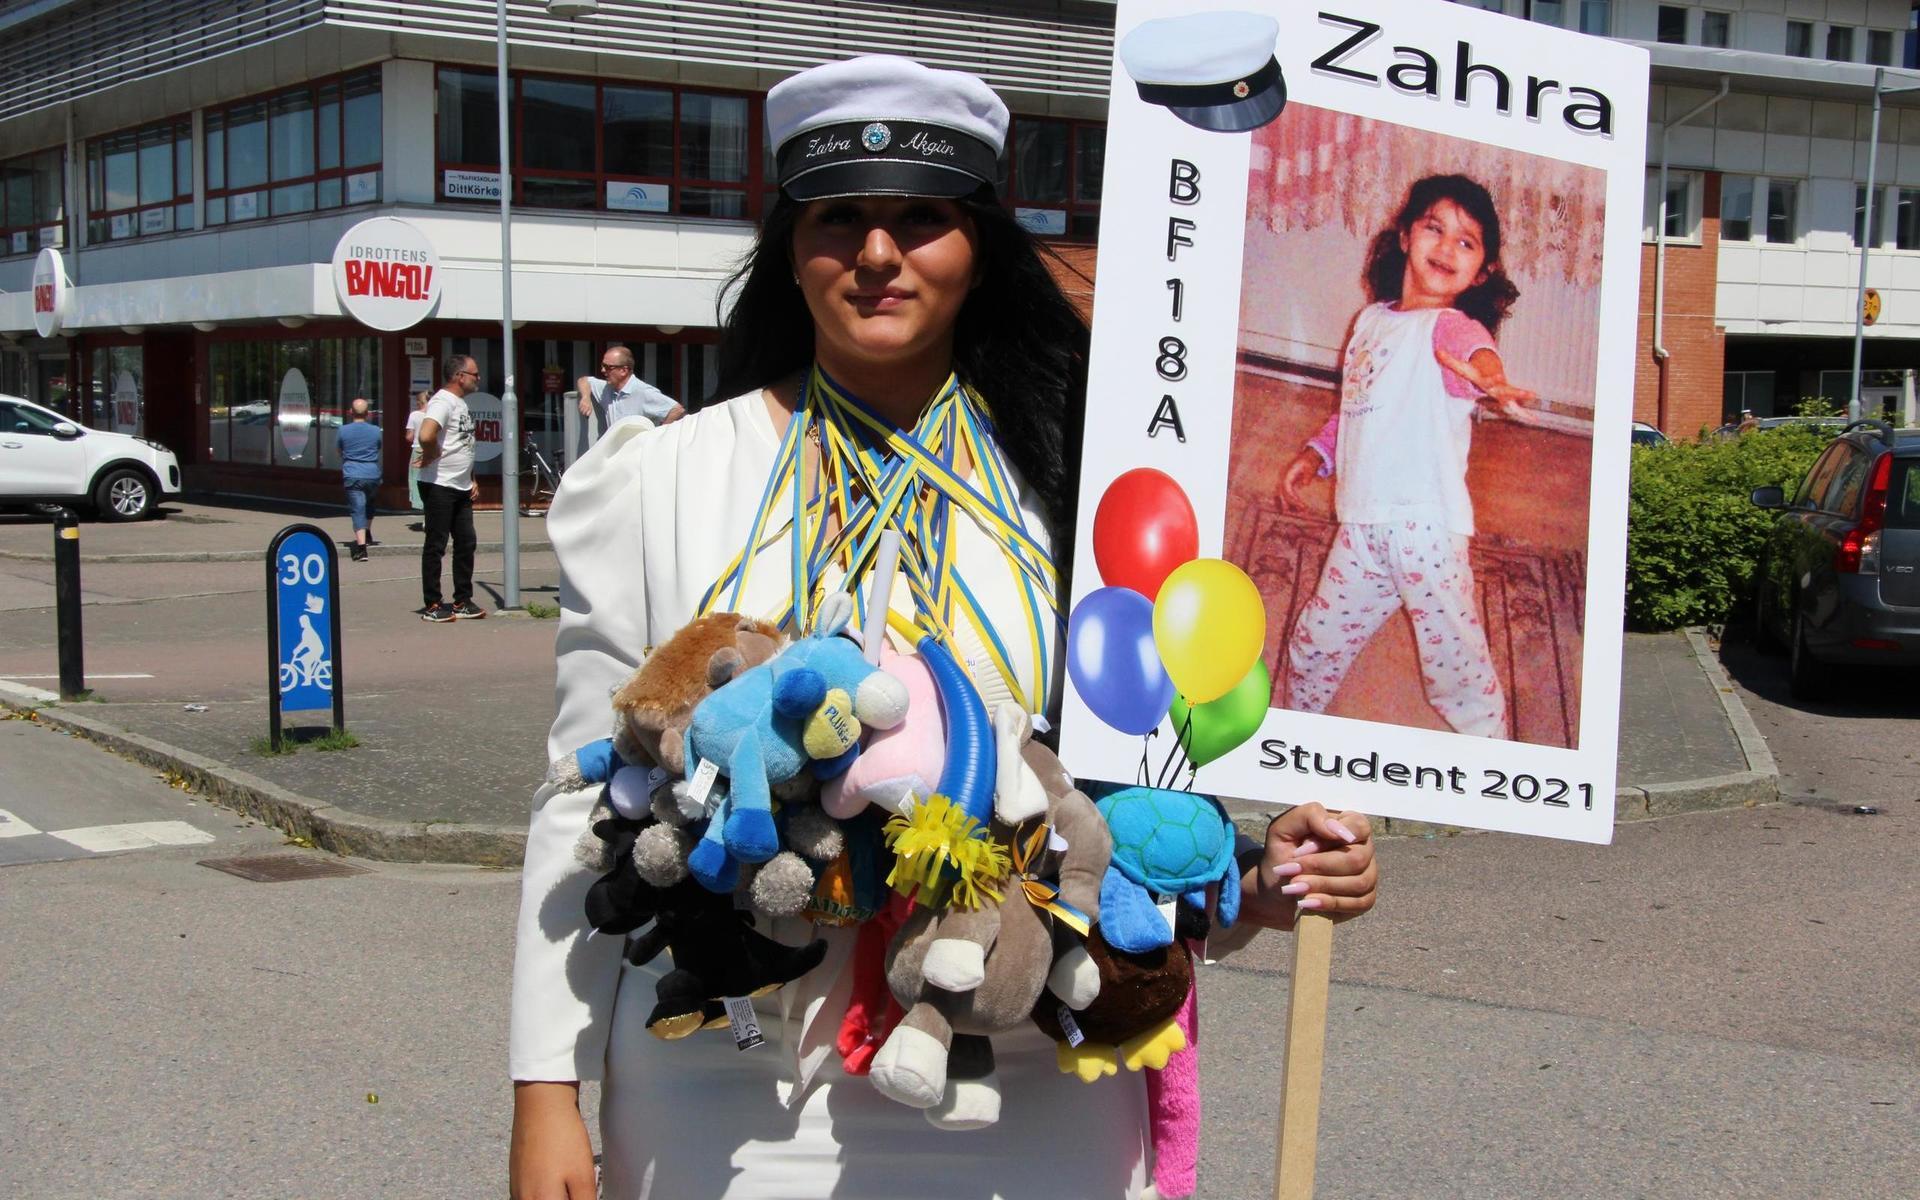 Zahra var en av alla lyckliga studenter.